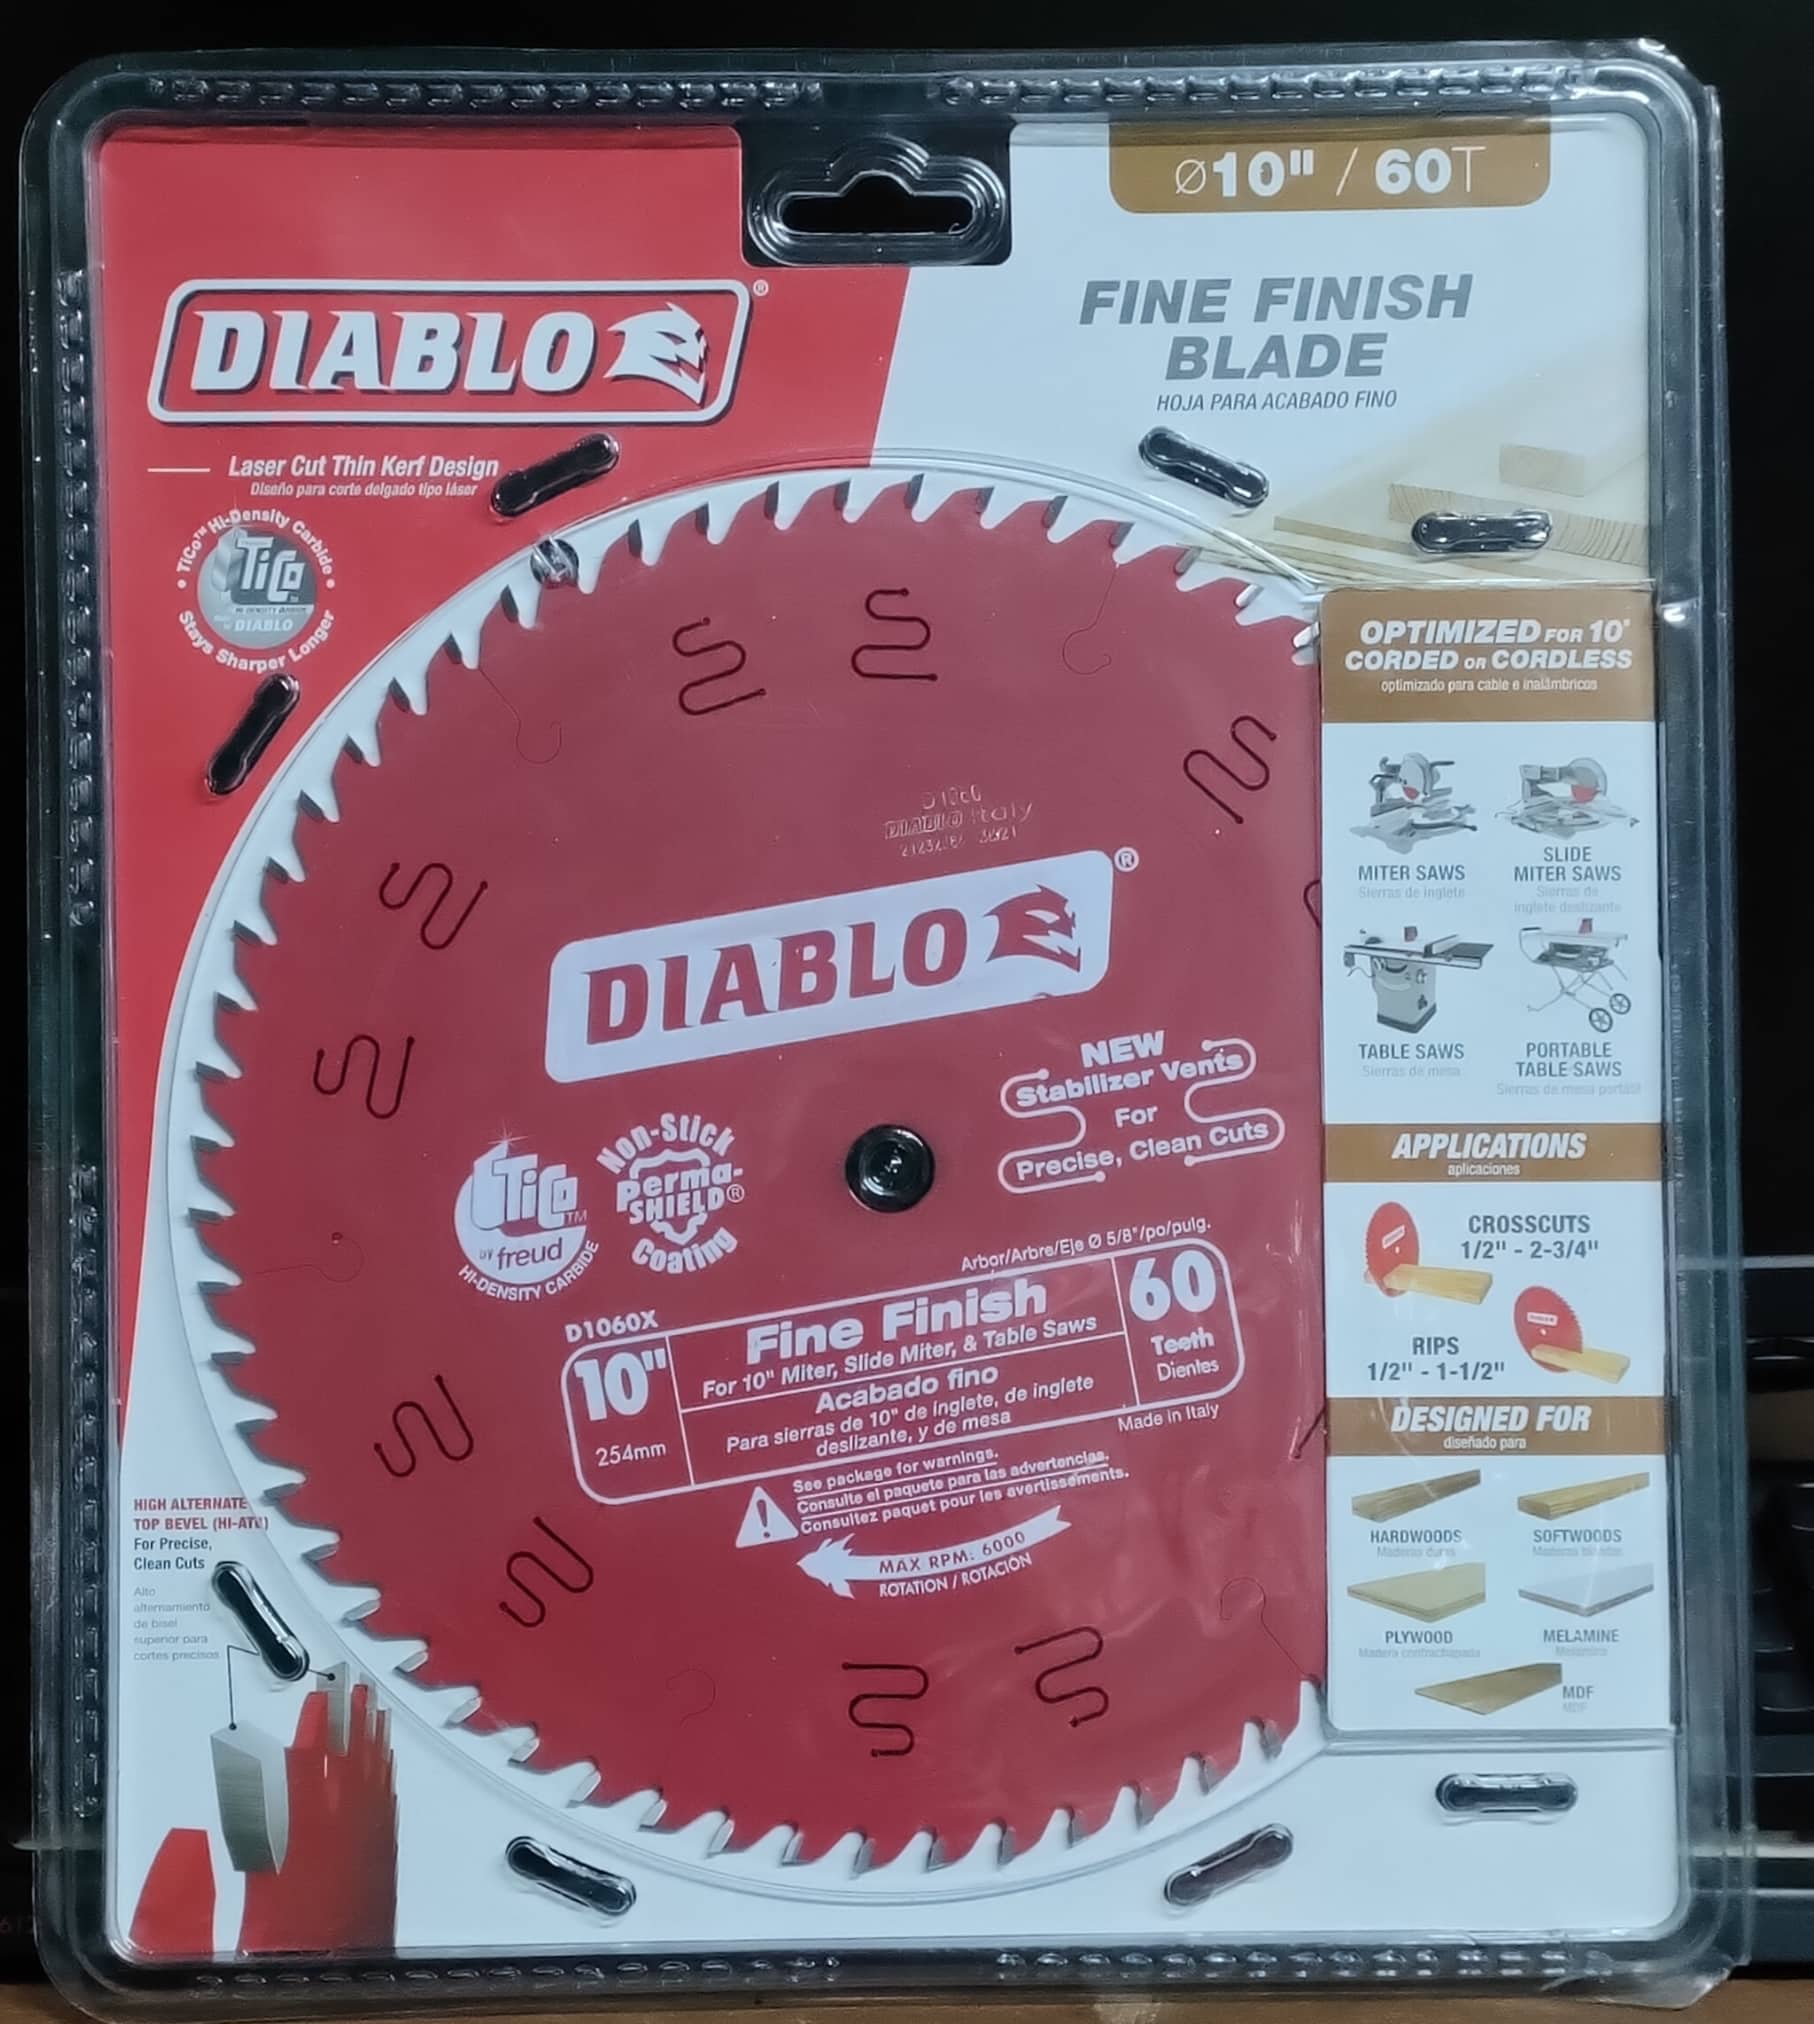 Buy Diablo 10 Inch Circular Saw Blade online